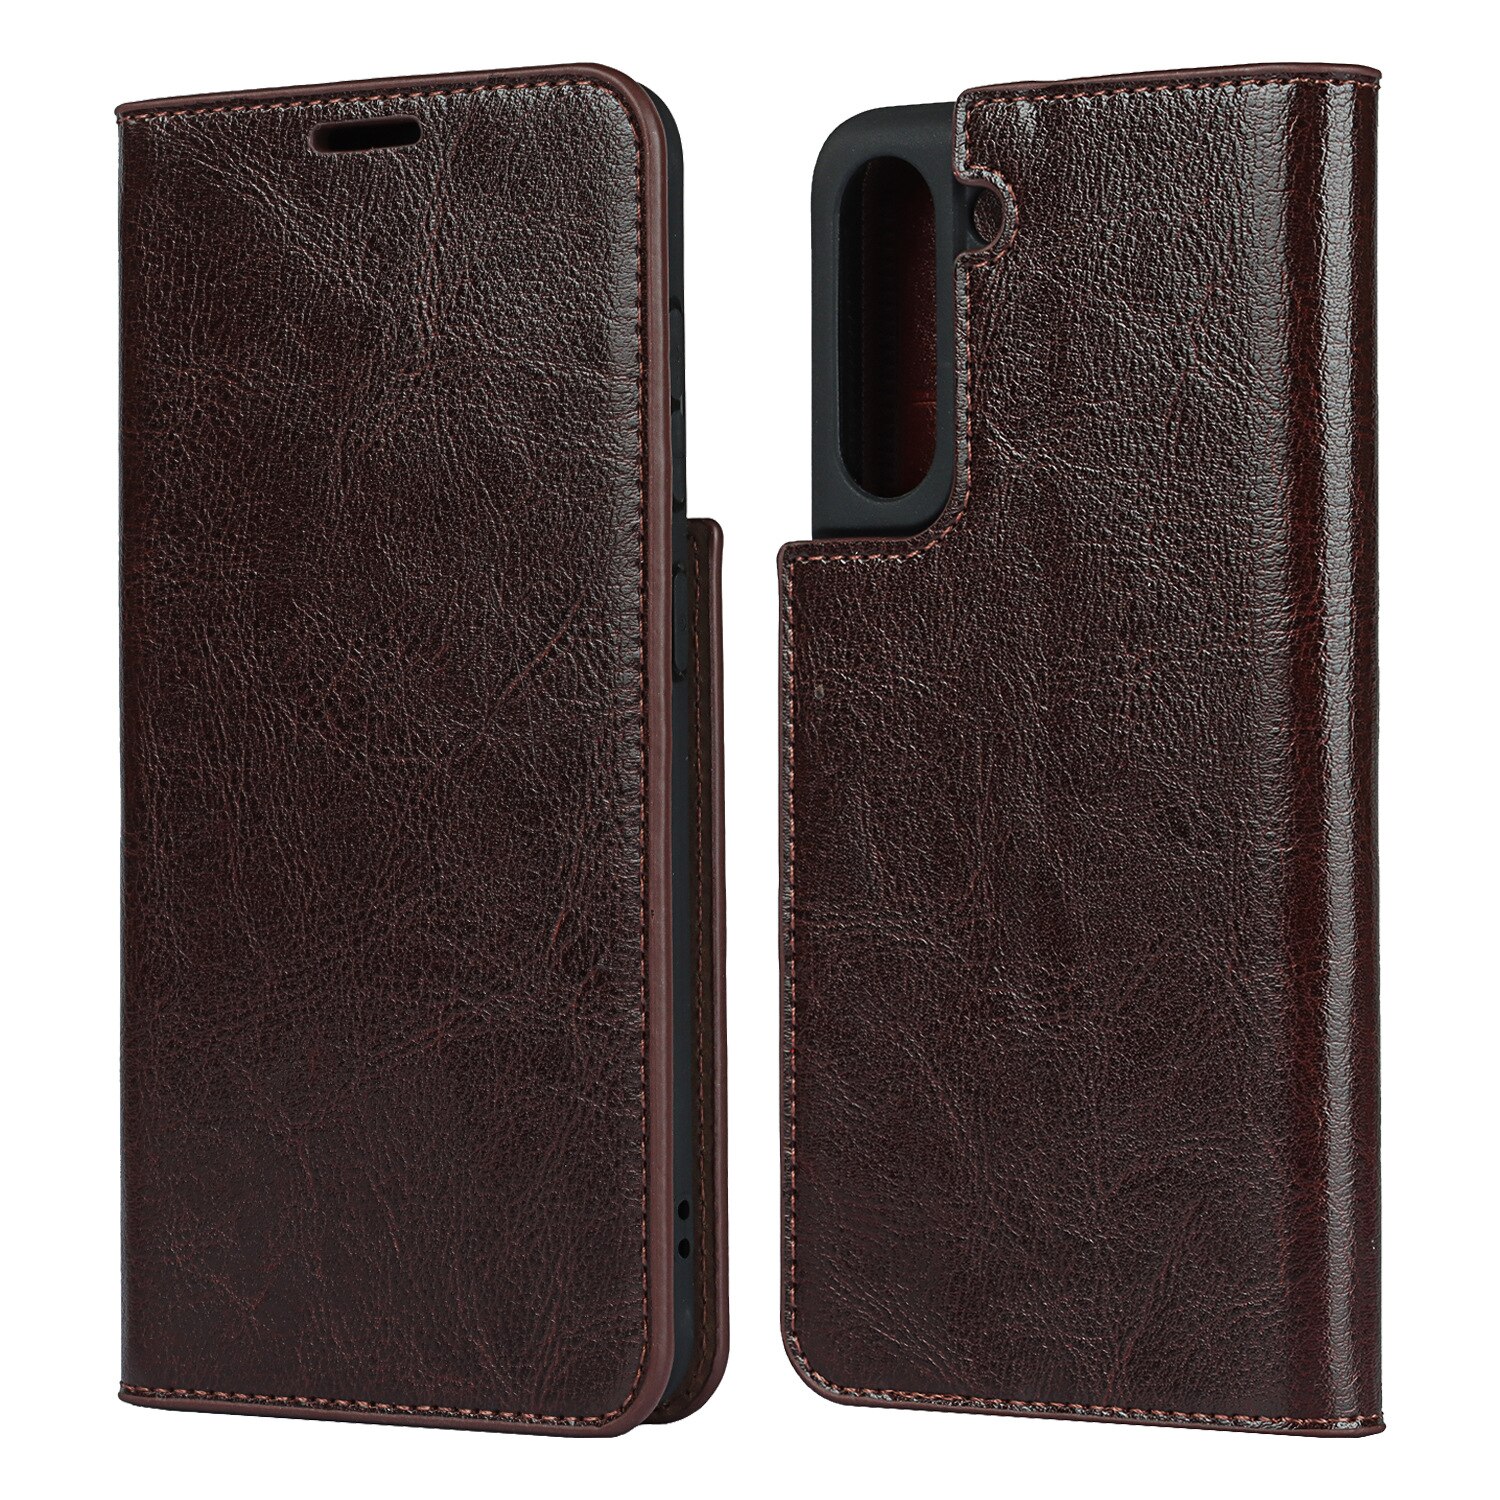 Samsung Galaxy S21 Genuine Leather Wallet Case Dark Brown